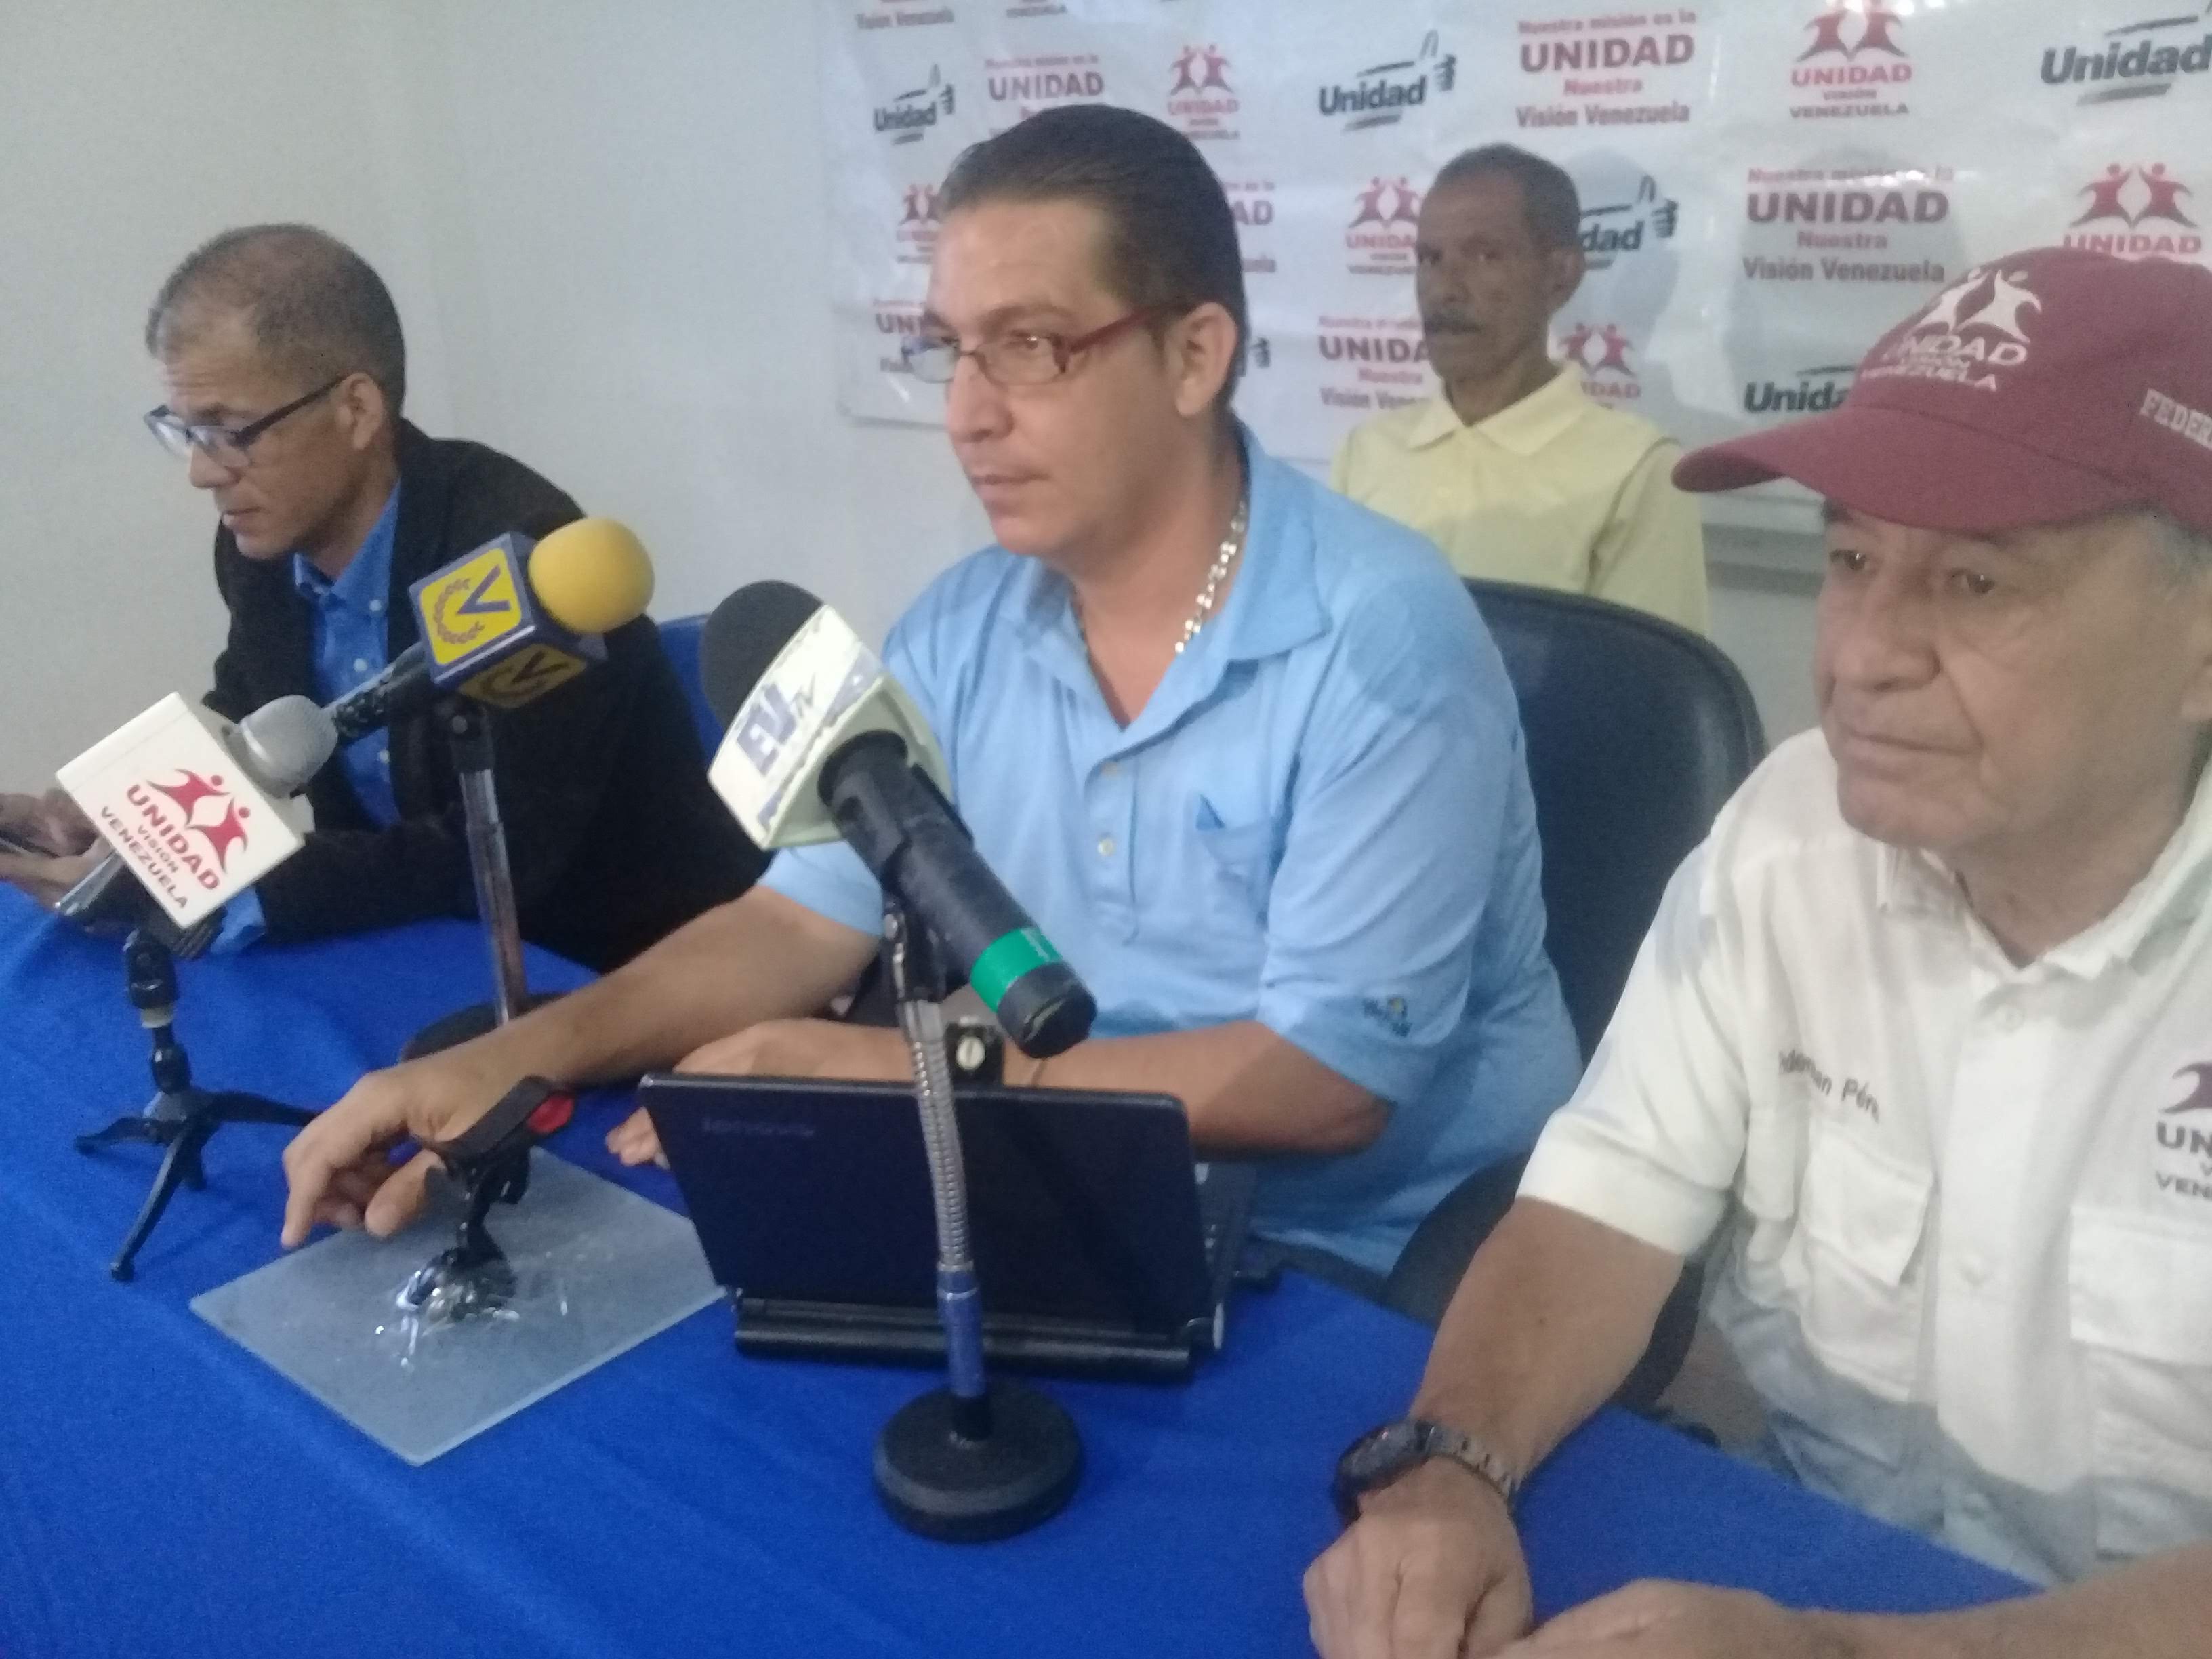 Unidad Visión Venezuela denuncia desidia y abandono de las autoridades en Miranda